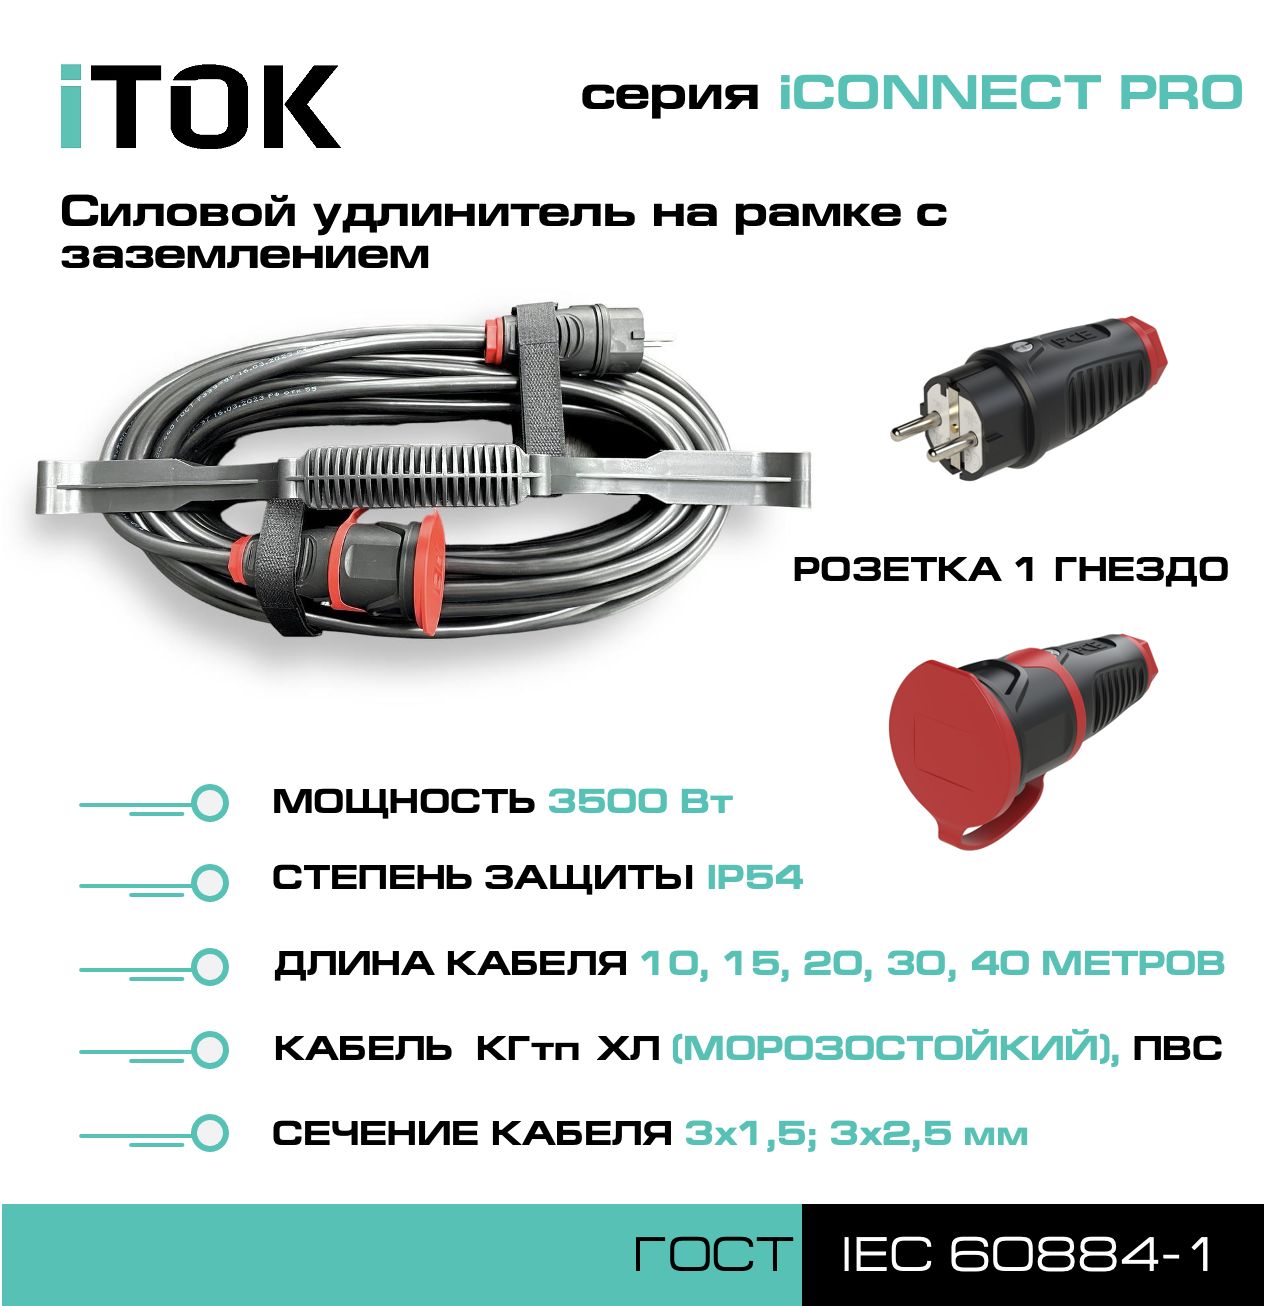 Удлинитель на рамке iTOK iCONNECT PRO с заземлением ПВС 3х2,5 мм 1 гнездо IP54 15 м